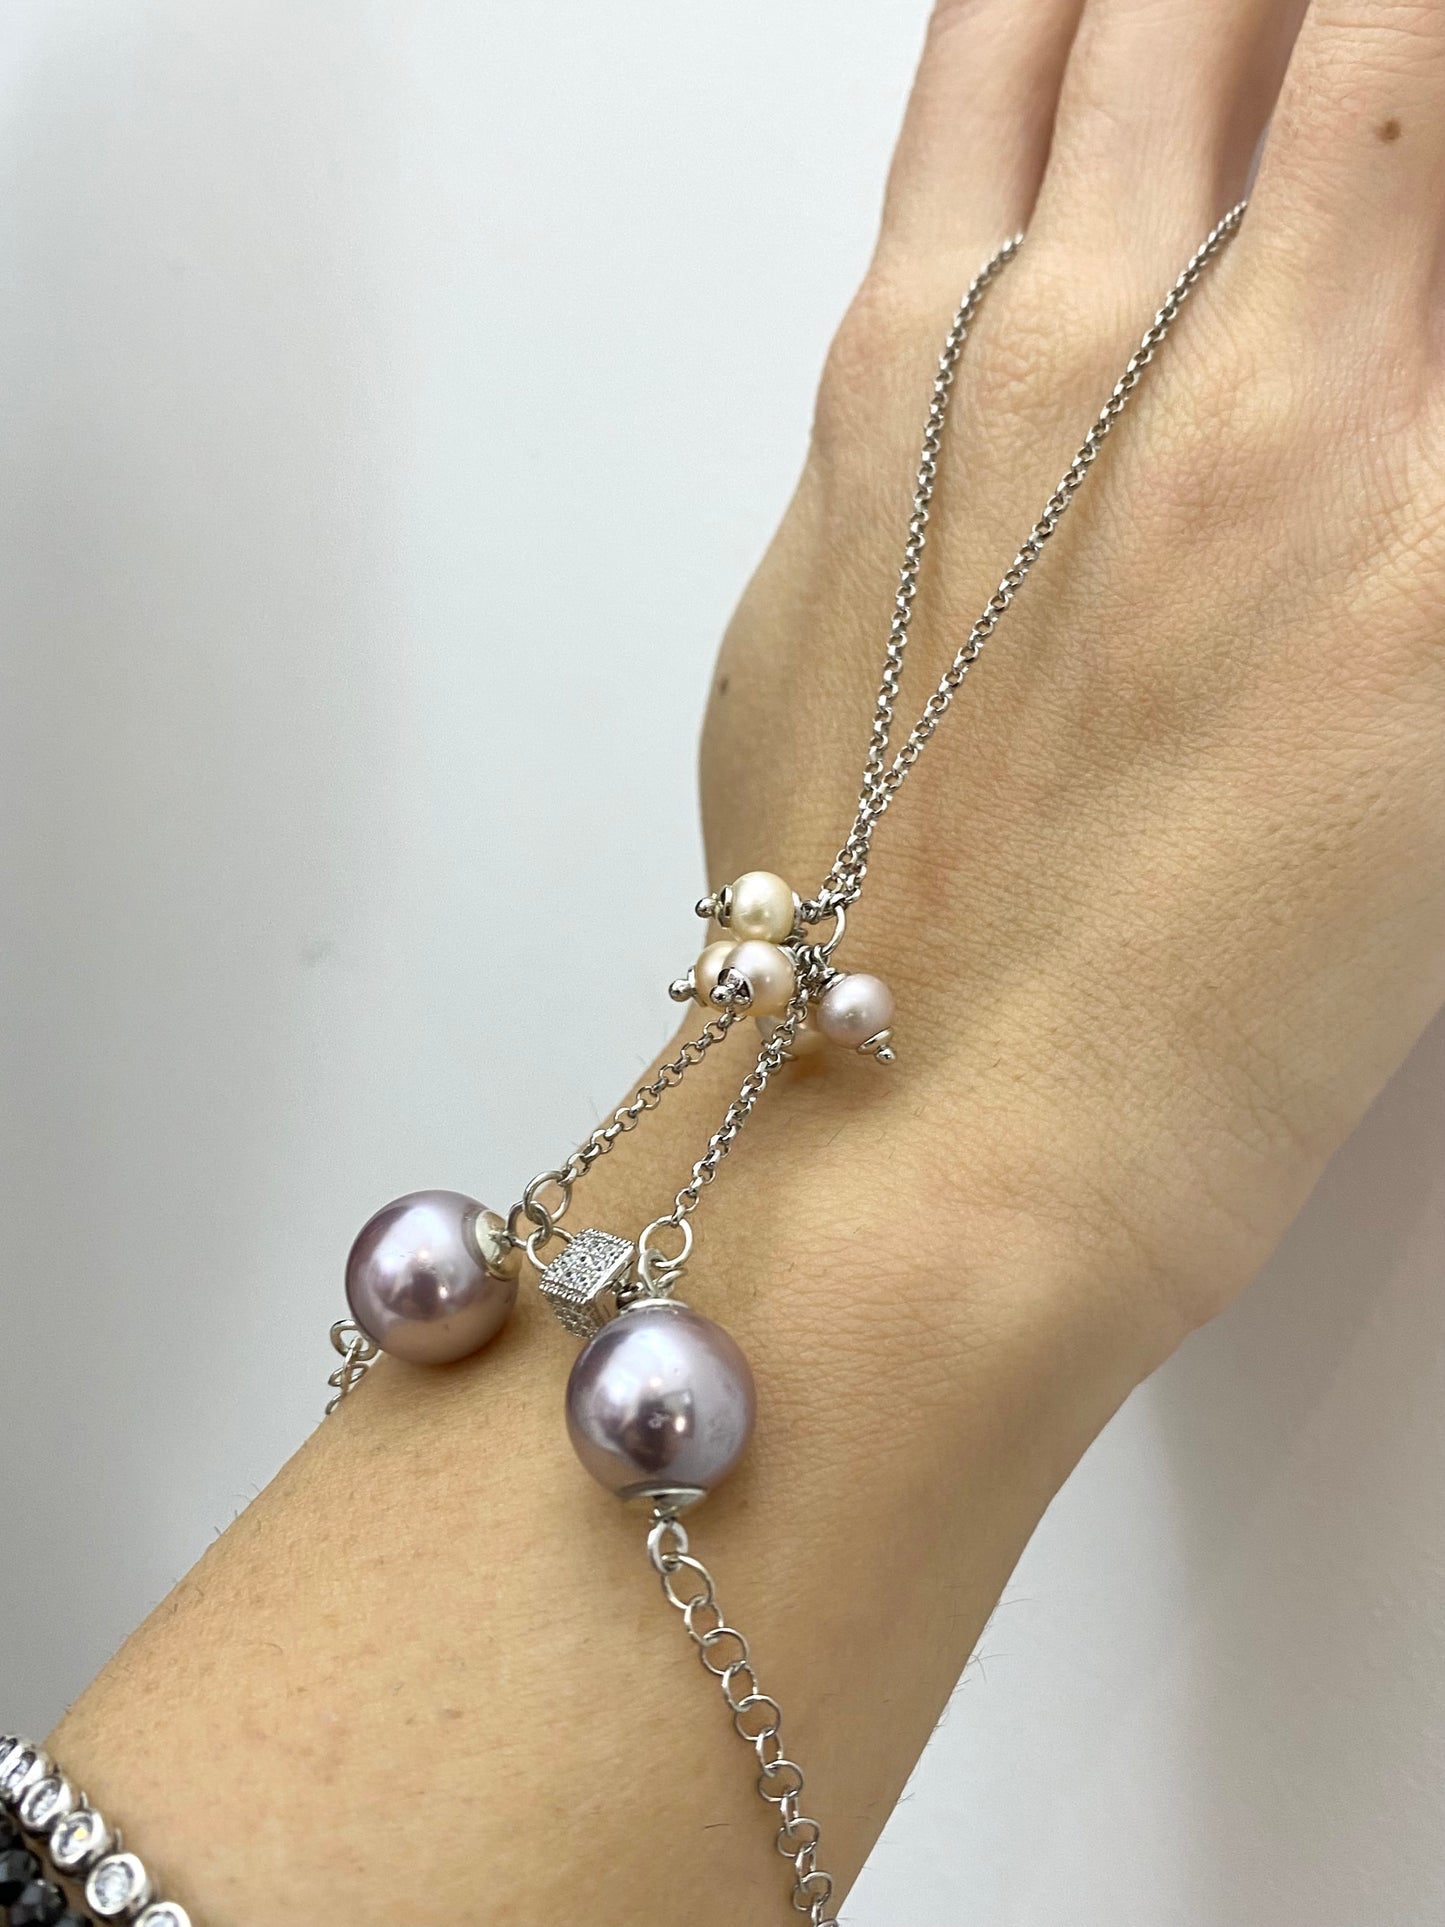 Bracciale “Baciamano” perle personalizzato